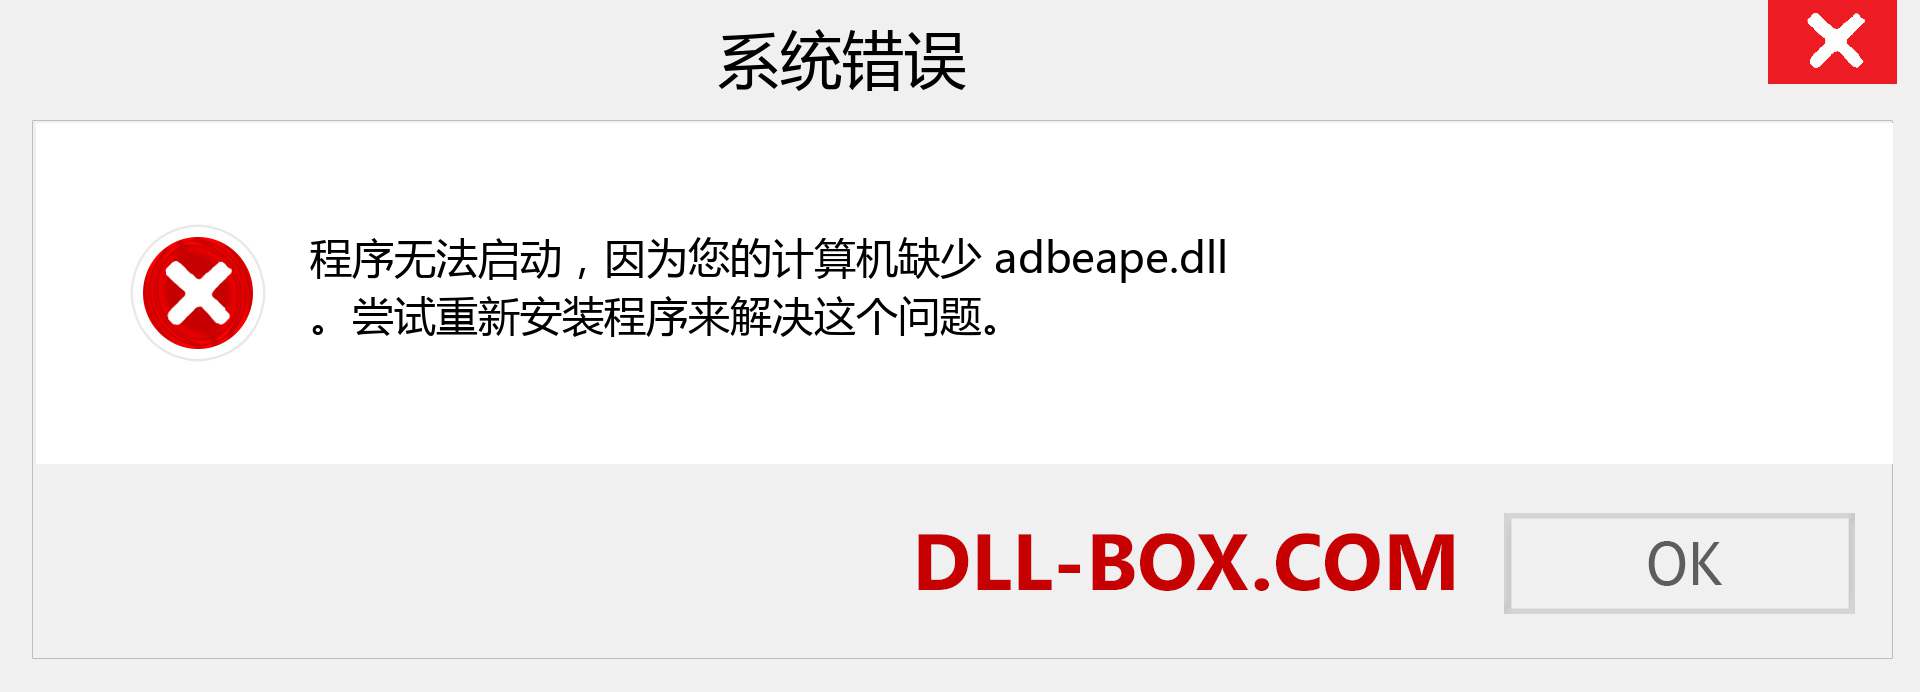 adbeape.dll 文件丢失？。 适用于 Windows 7、8、10 的下载 - 修复 Windows、照片、图像上的 adbeape dll 丢失错误